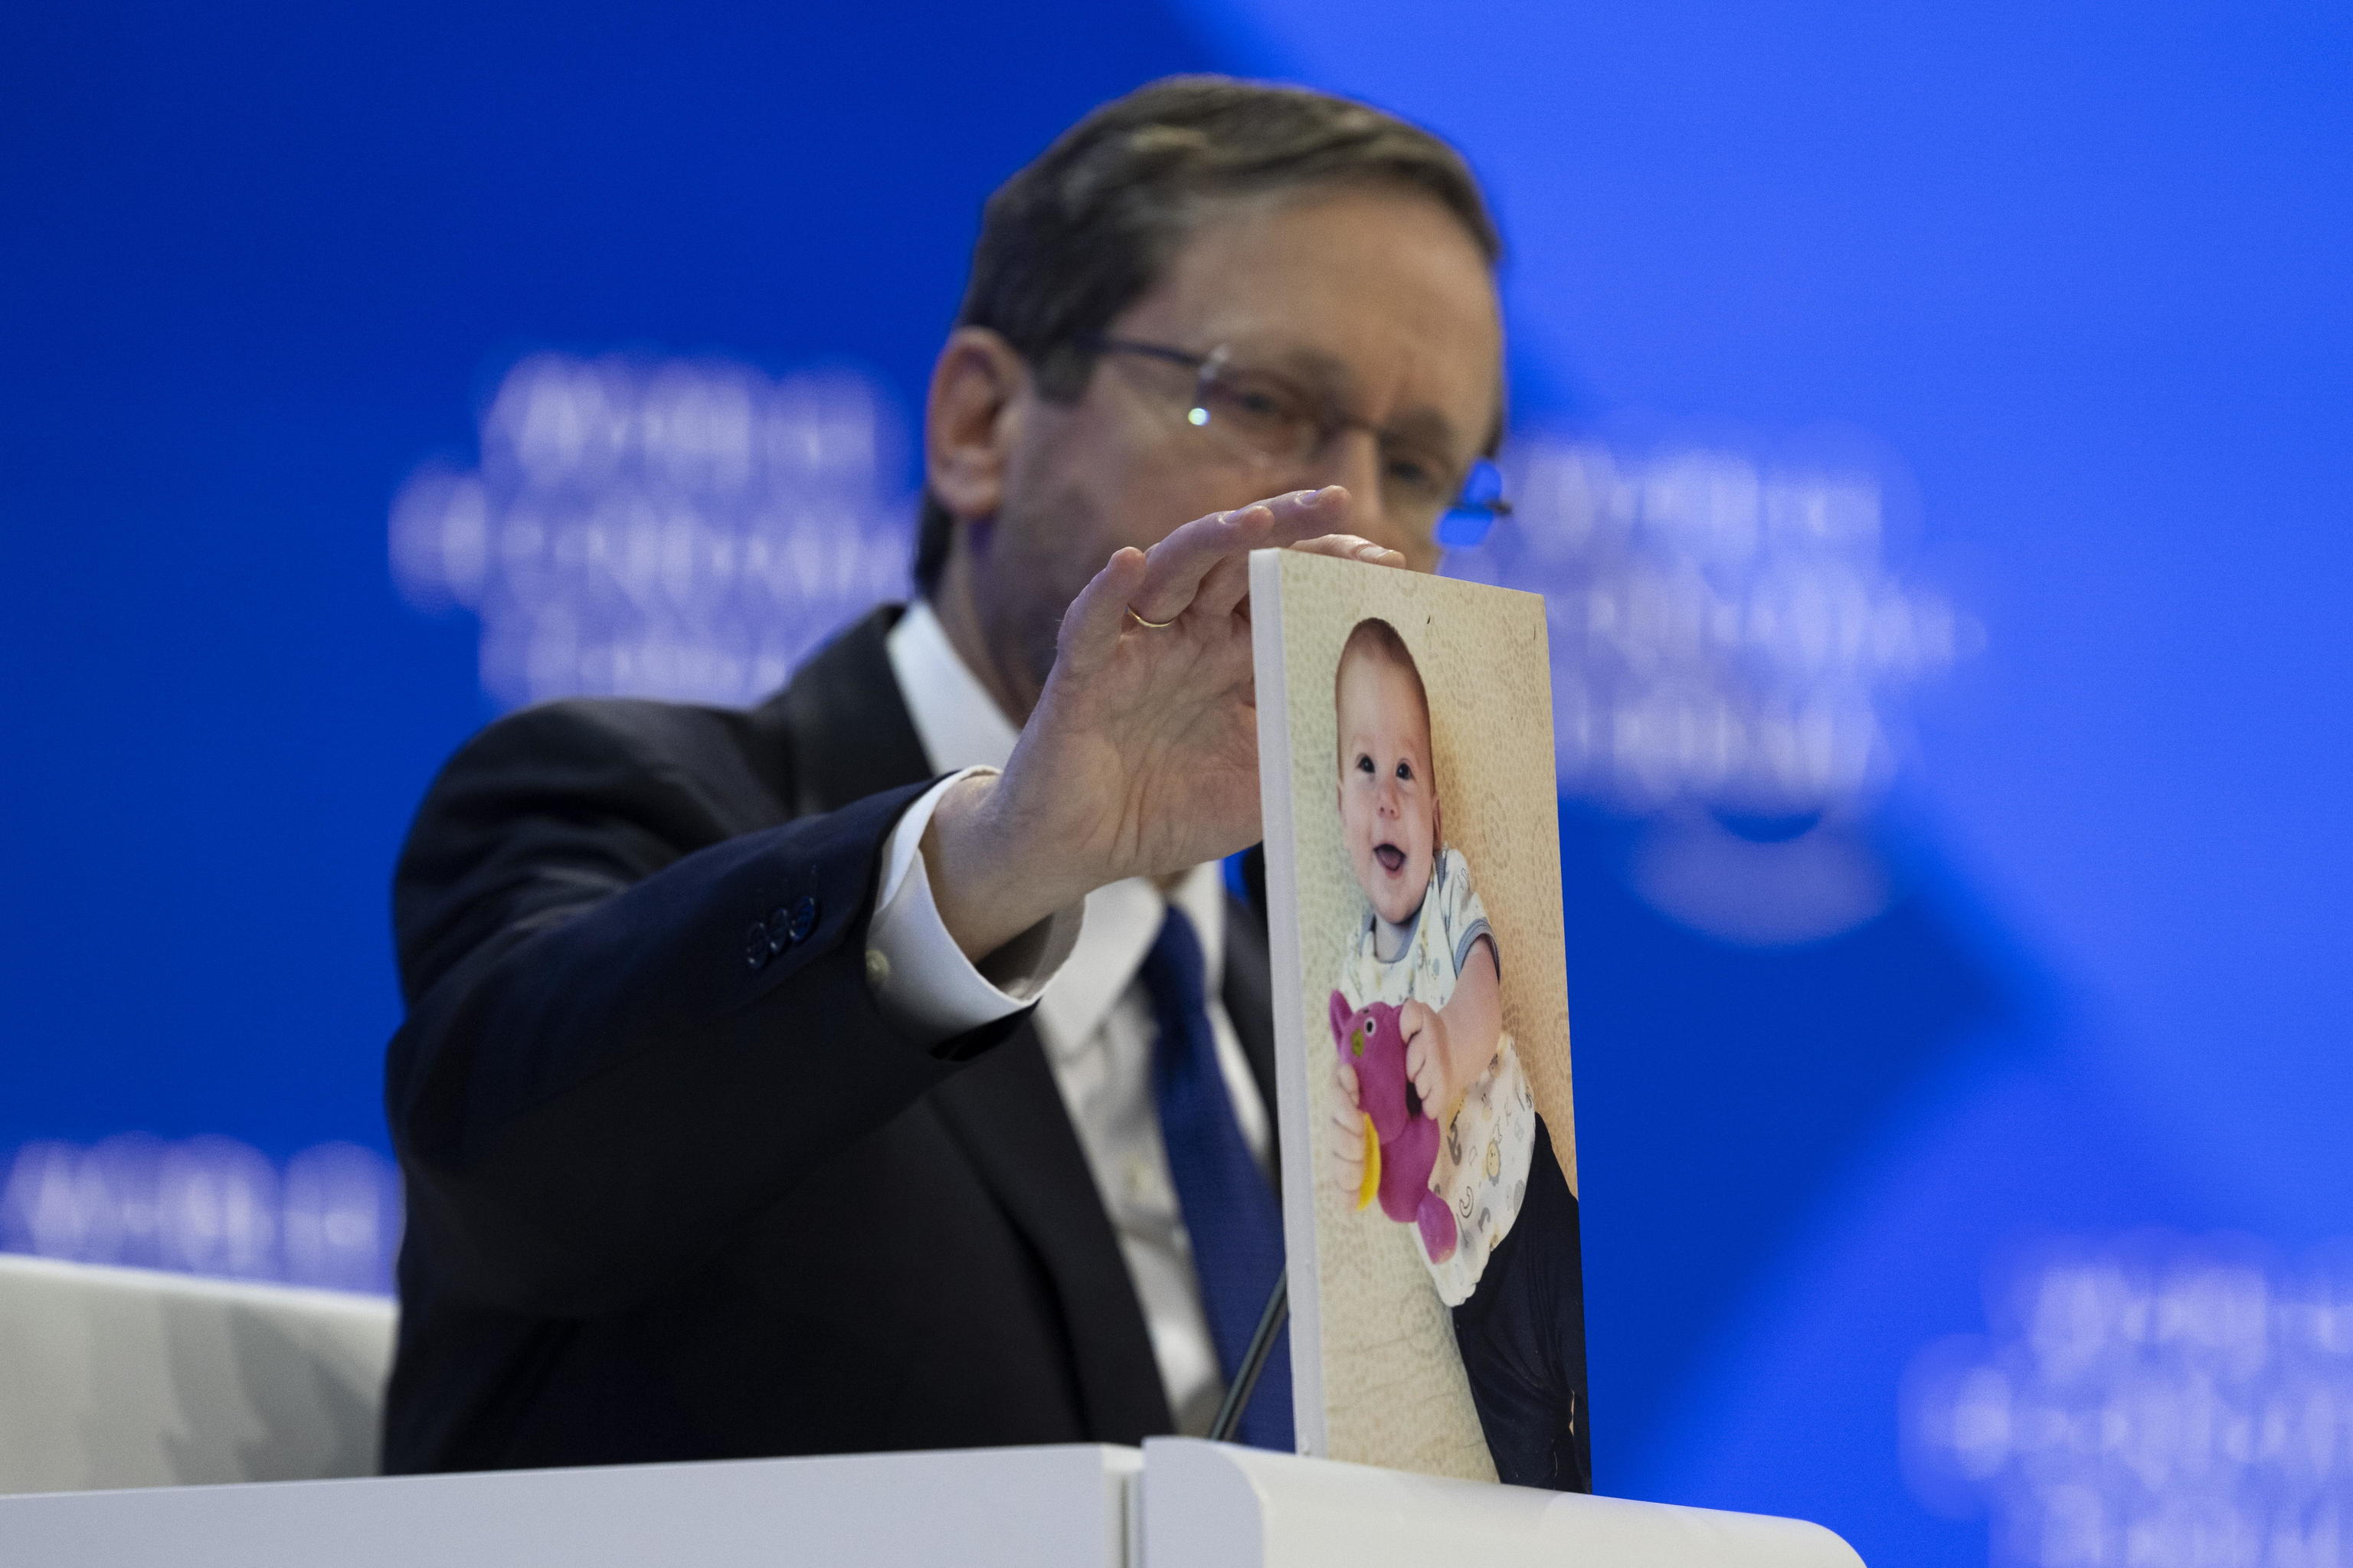 El presidente de Israel, Isaac Herzog, mostrando al auditorio la foto de un beb secuestrado por Hamas.